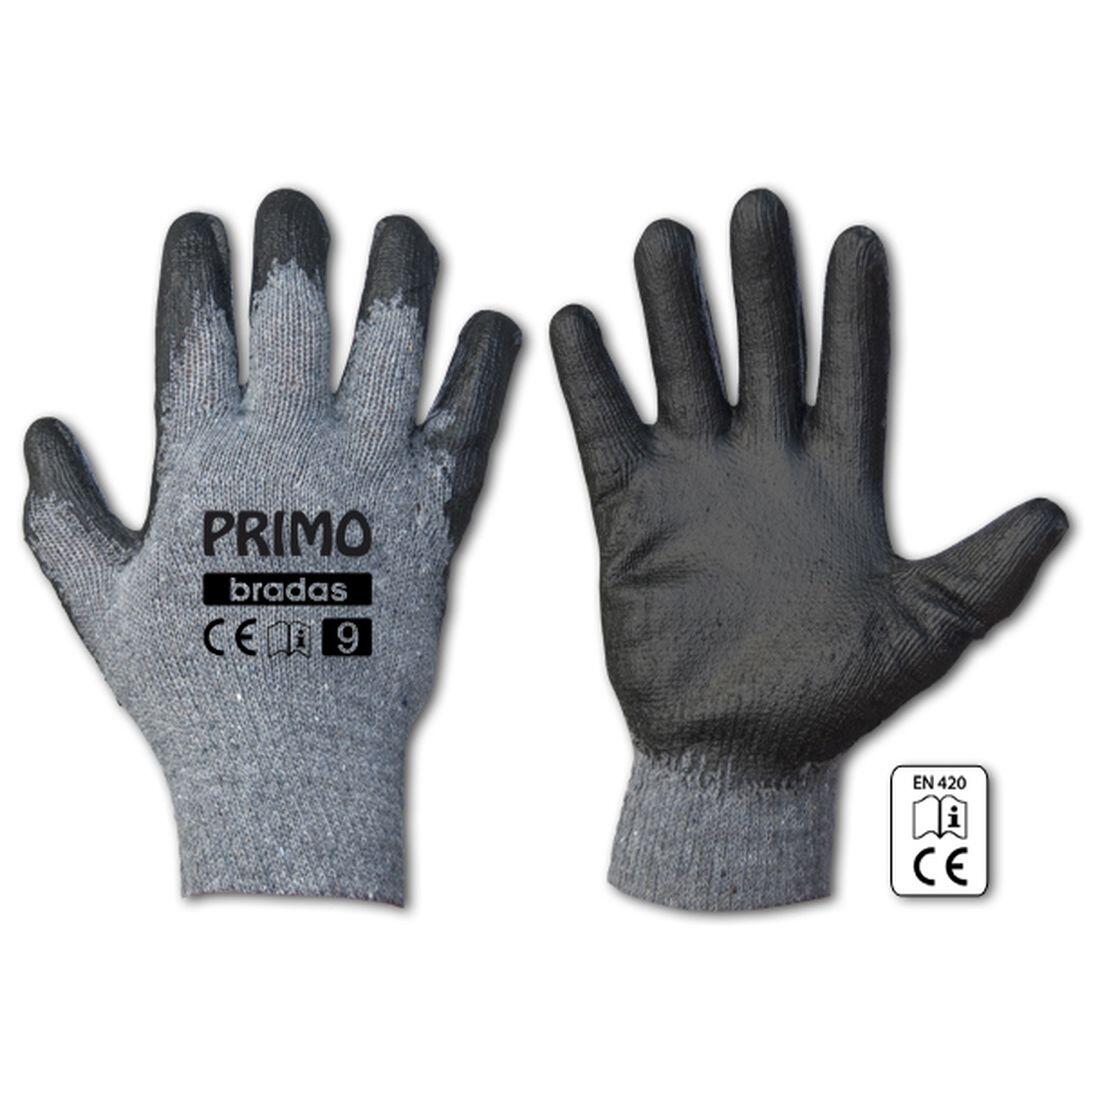 rukavice PRIMO latex 11 0.07 Kg MAXMIX Sklad14 715685 242